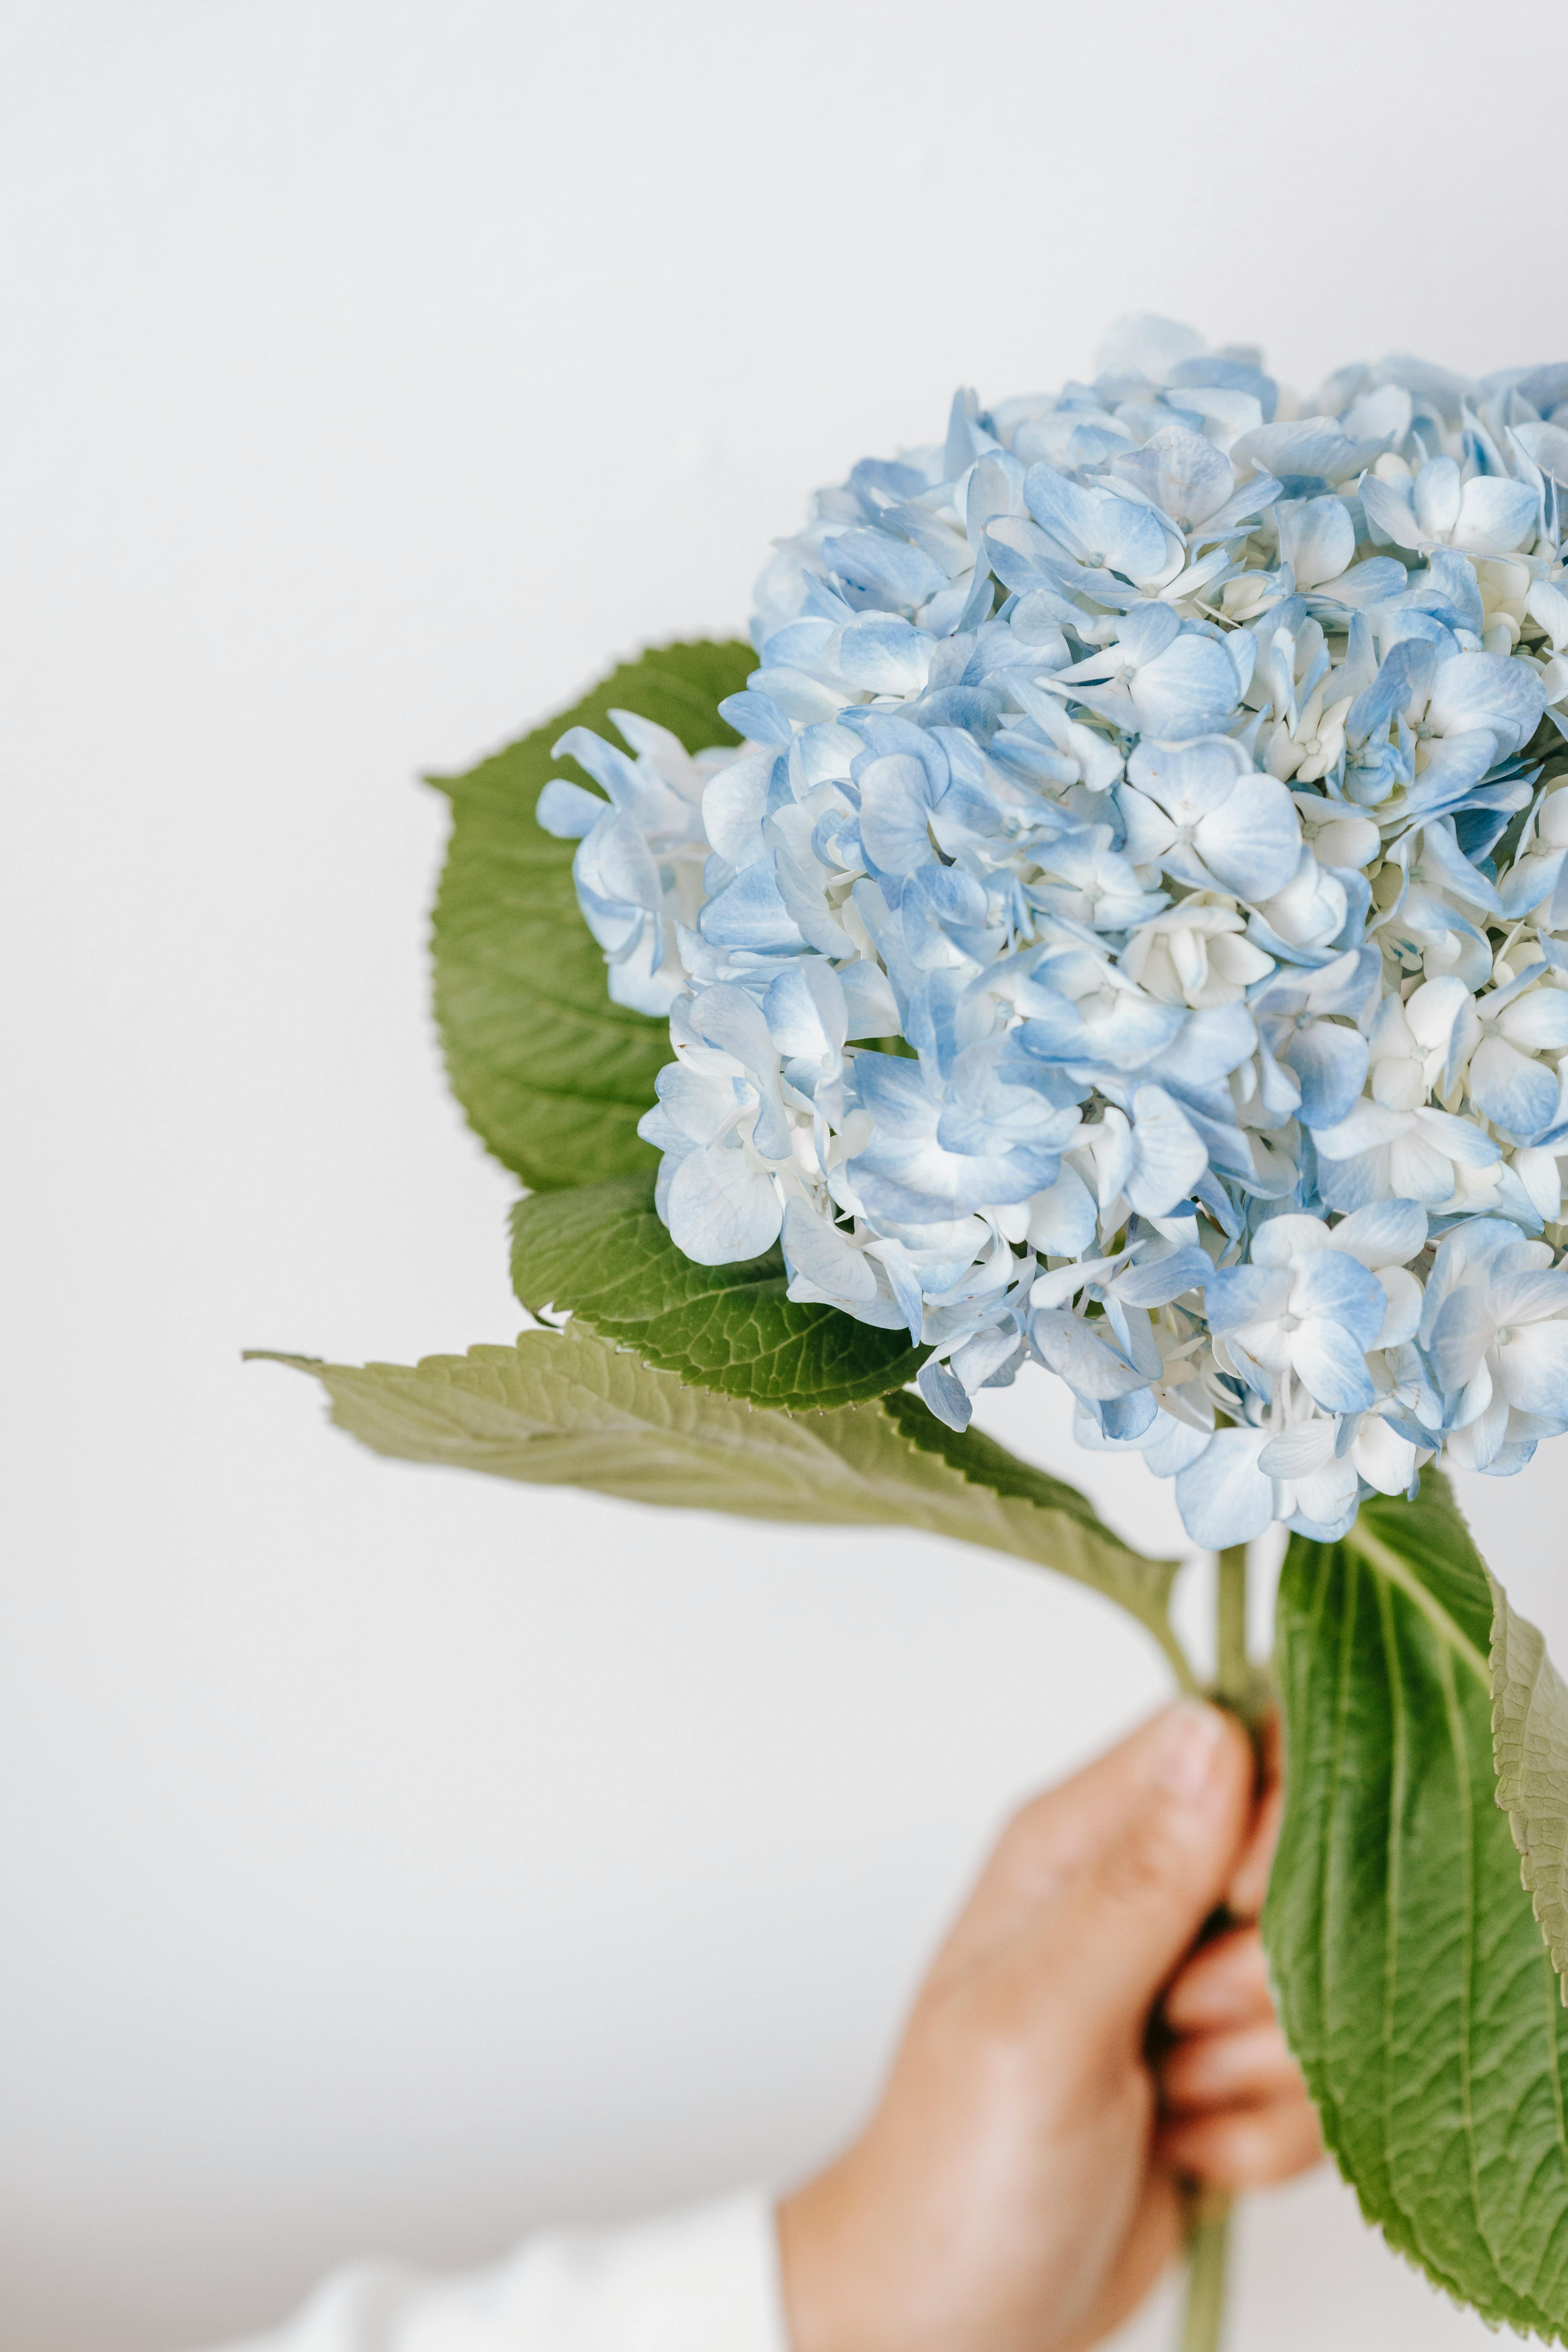 Cẩm tú cầu - Với những cánh hoa tuyệt đẹp và màu sắc đa dạng, hình ảnh của cẩm tú cầu sẽ đưa bạn vào một thế giới của sự đam mê và sự mãnh liệt. Cảm nhận được những hương thơm rực rỡ của cẩm tú cầu sẽ cho bạn một trải nghiệm độc đáo và tuyệt vời.